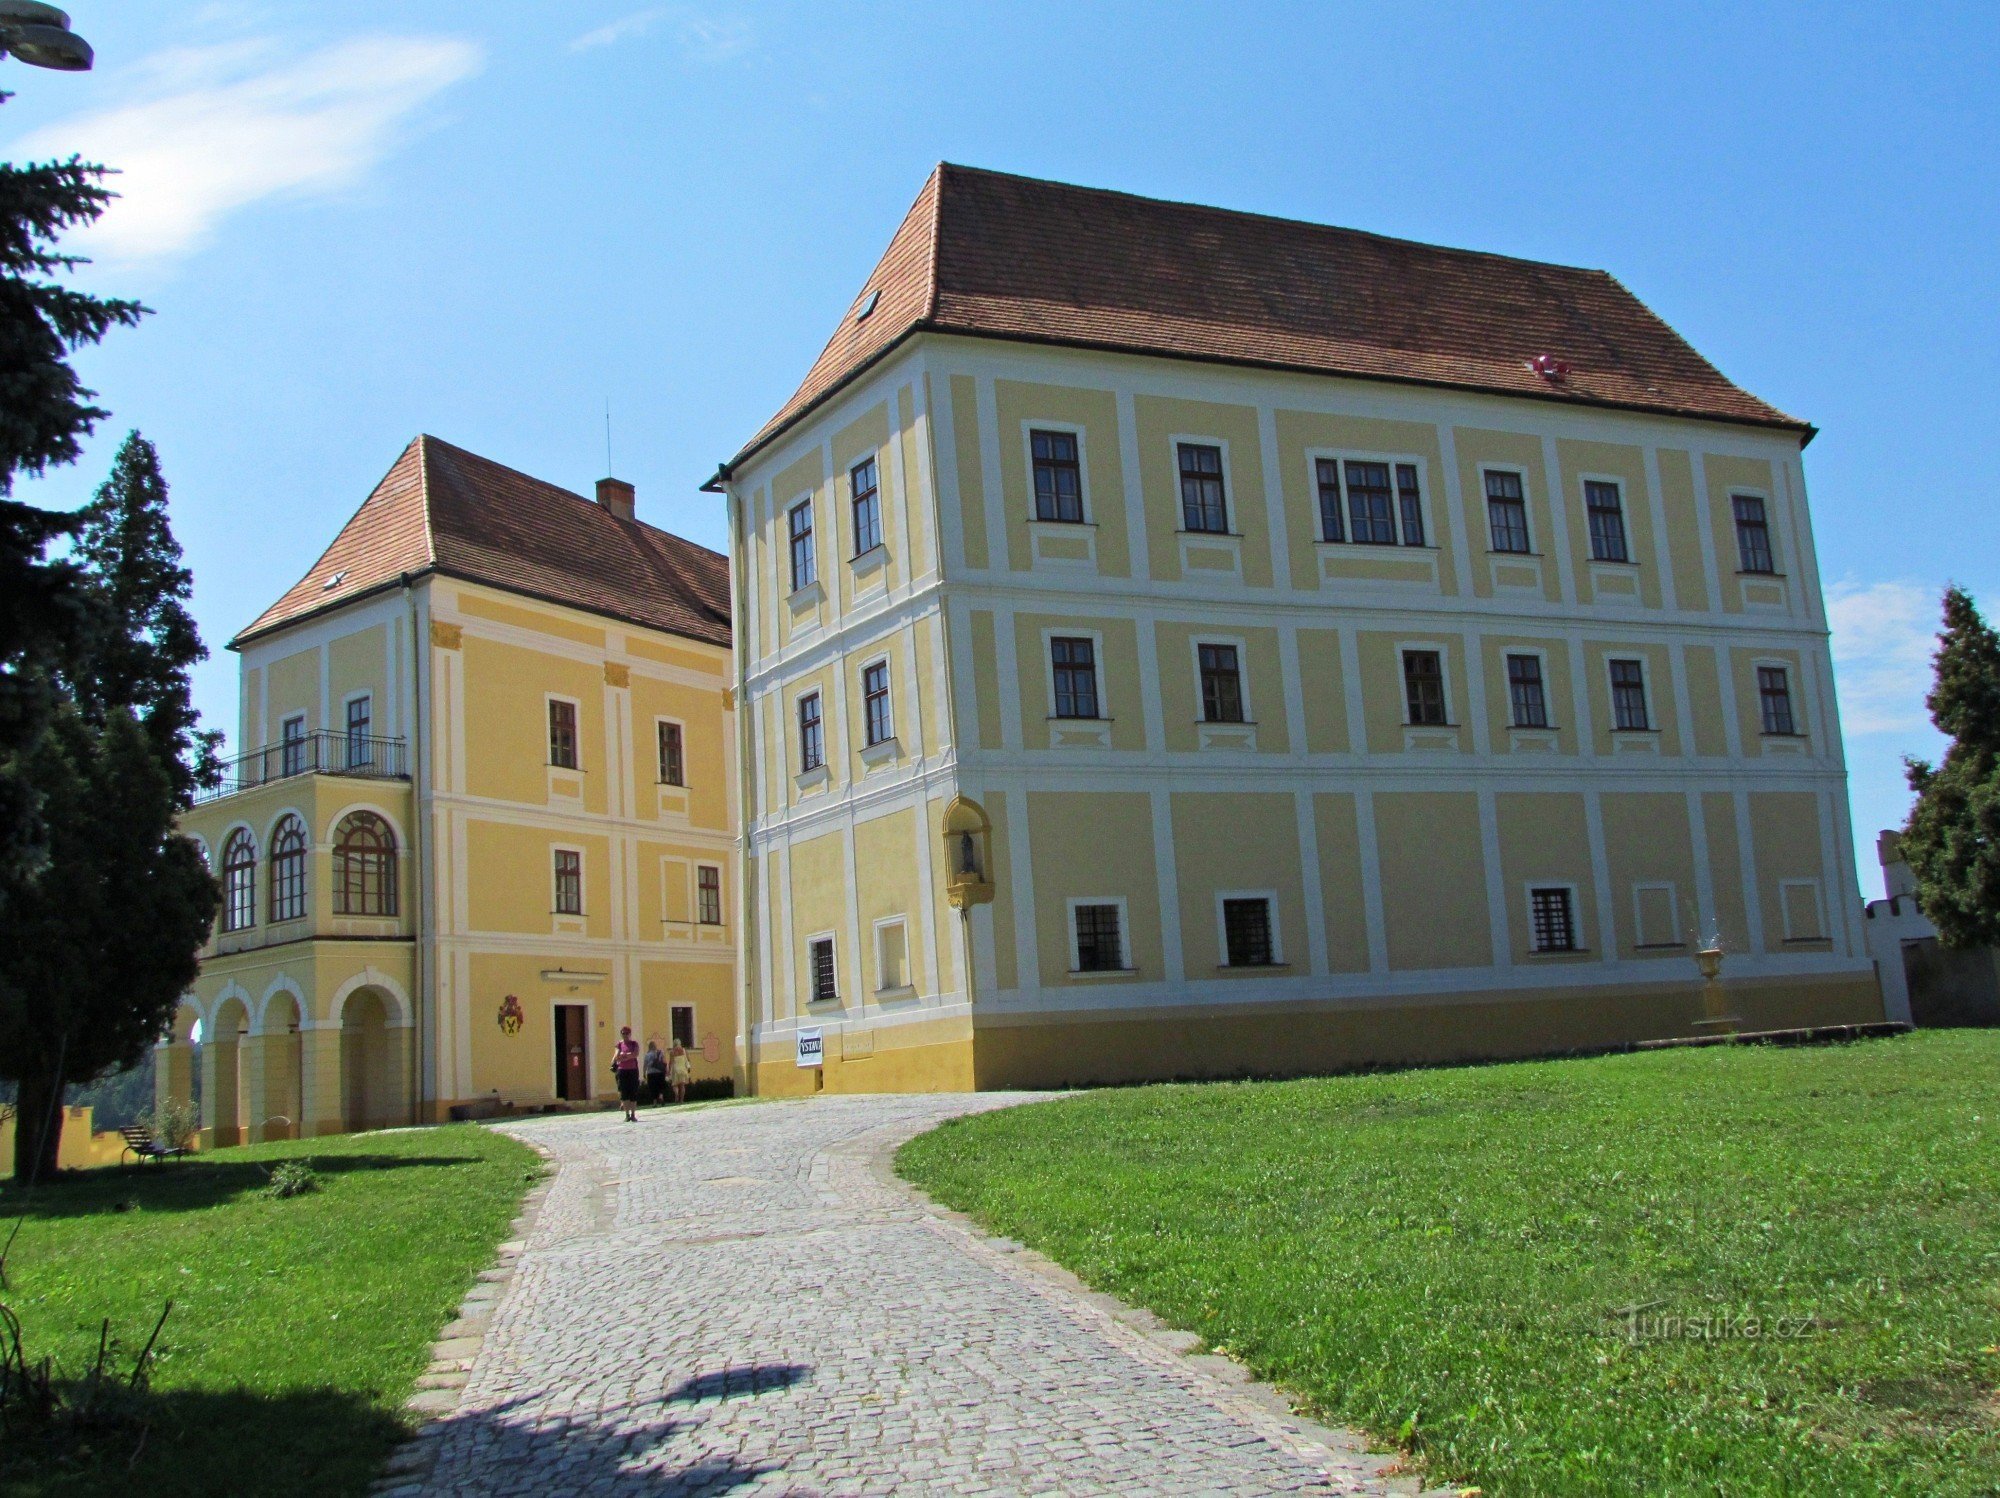 Zwiedzanie zamku w Letovicach